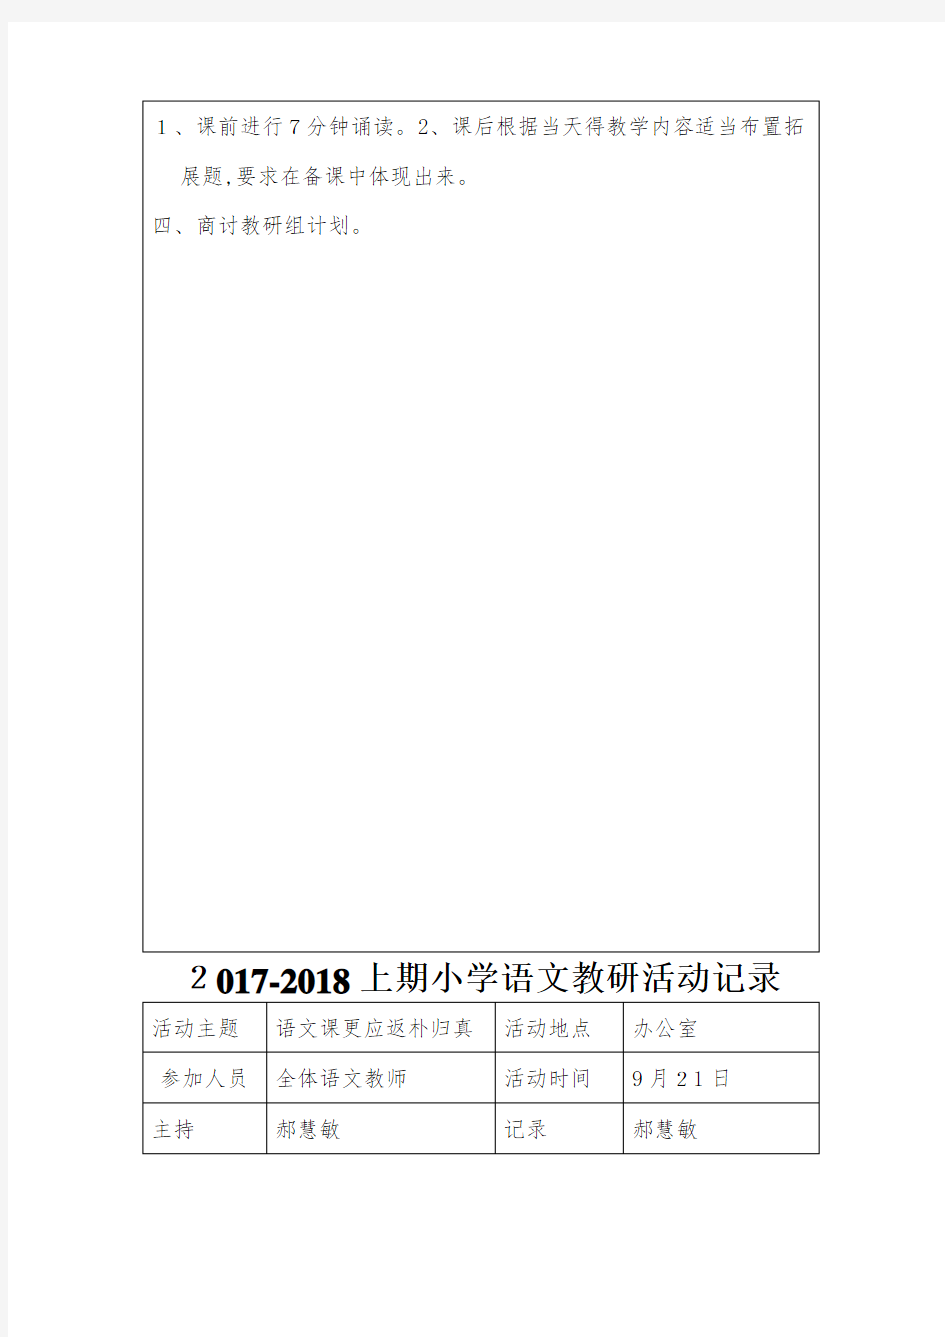 2017-2018小学语文组教研活动记录